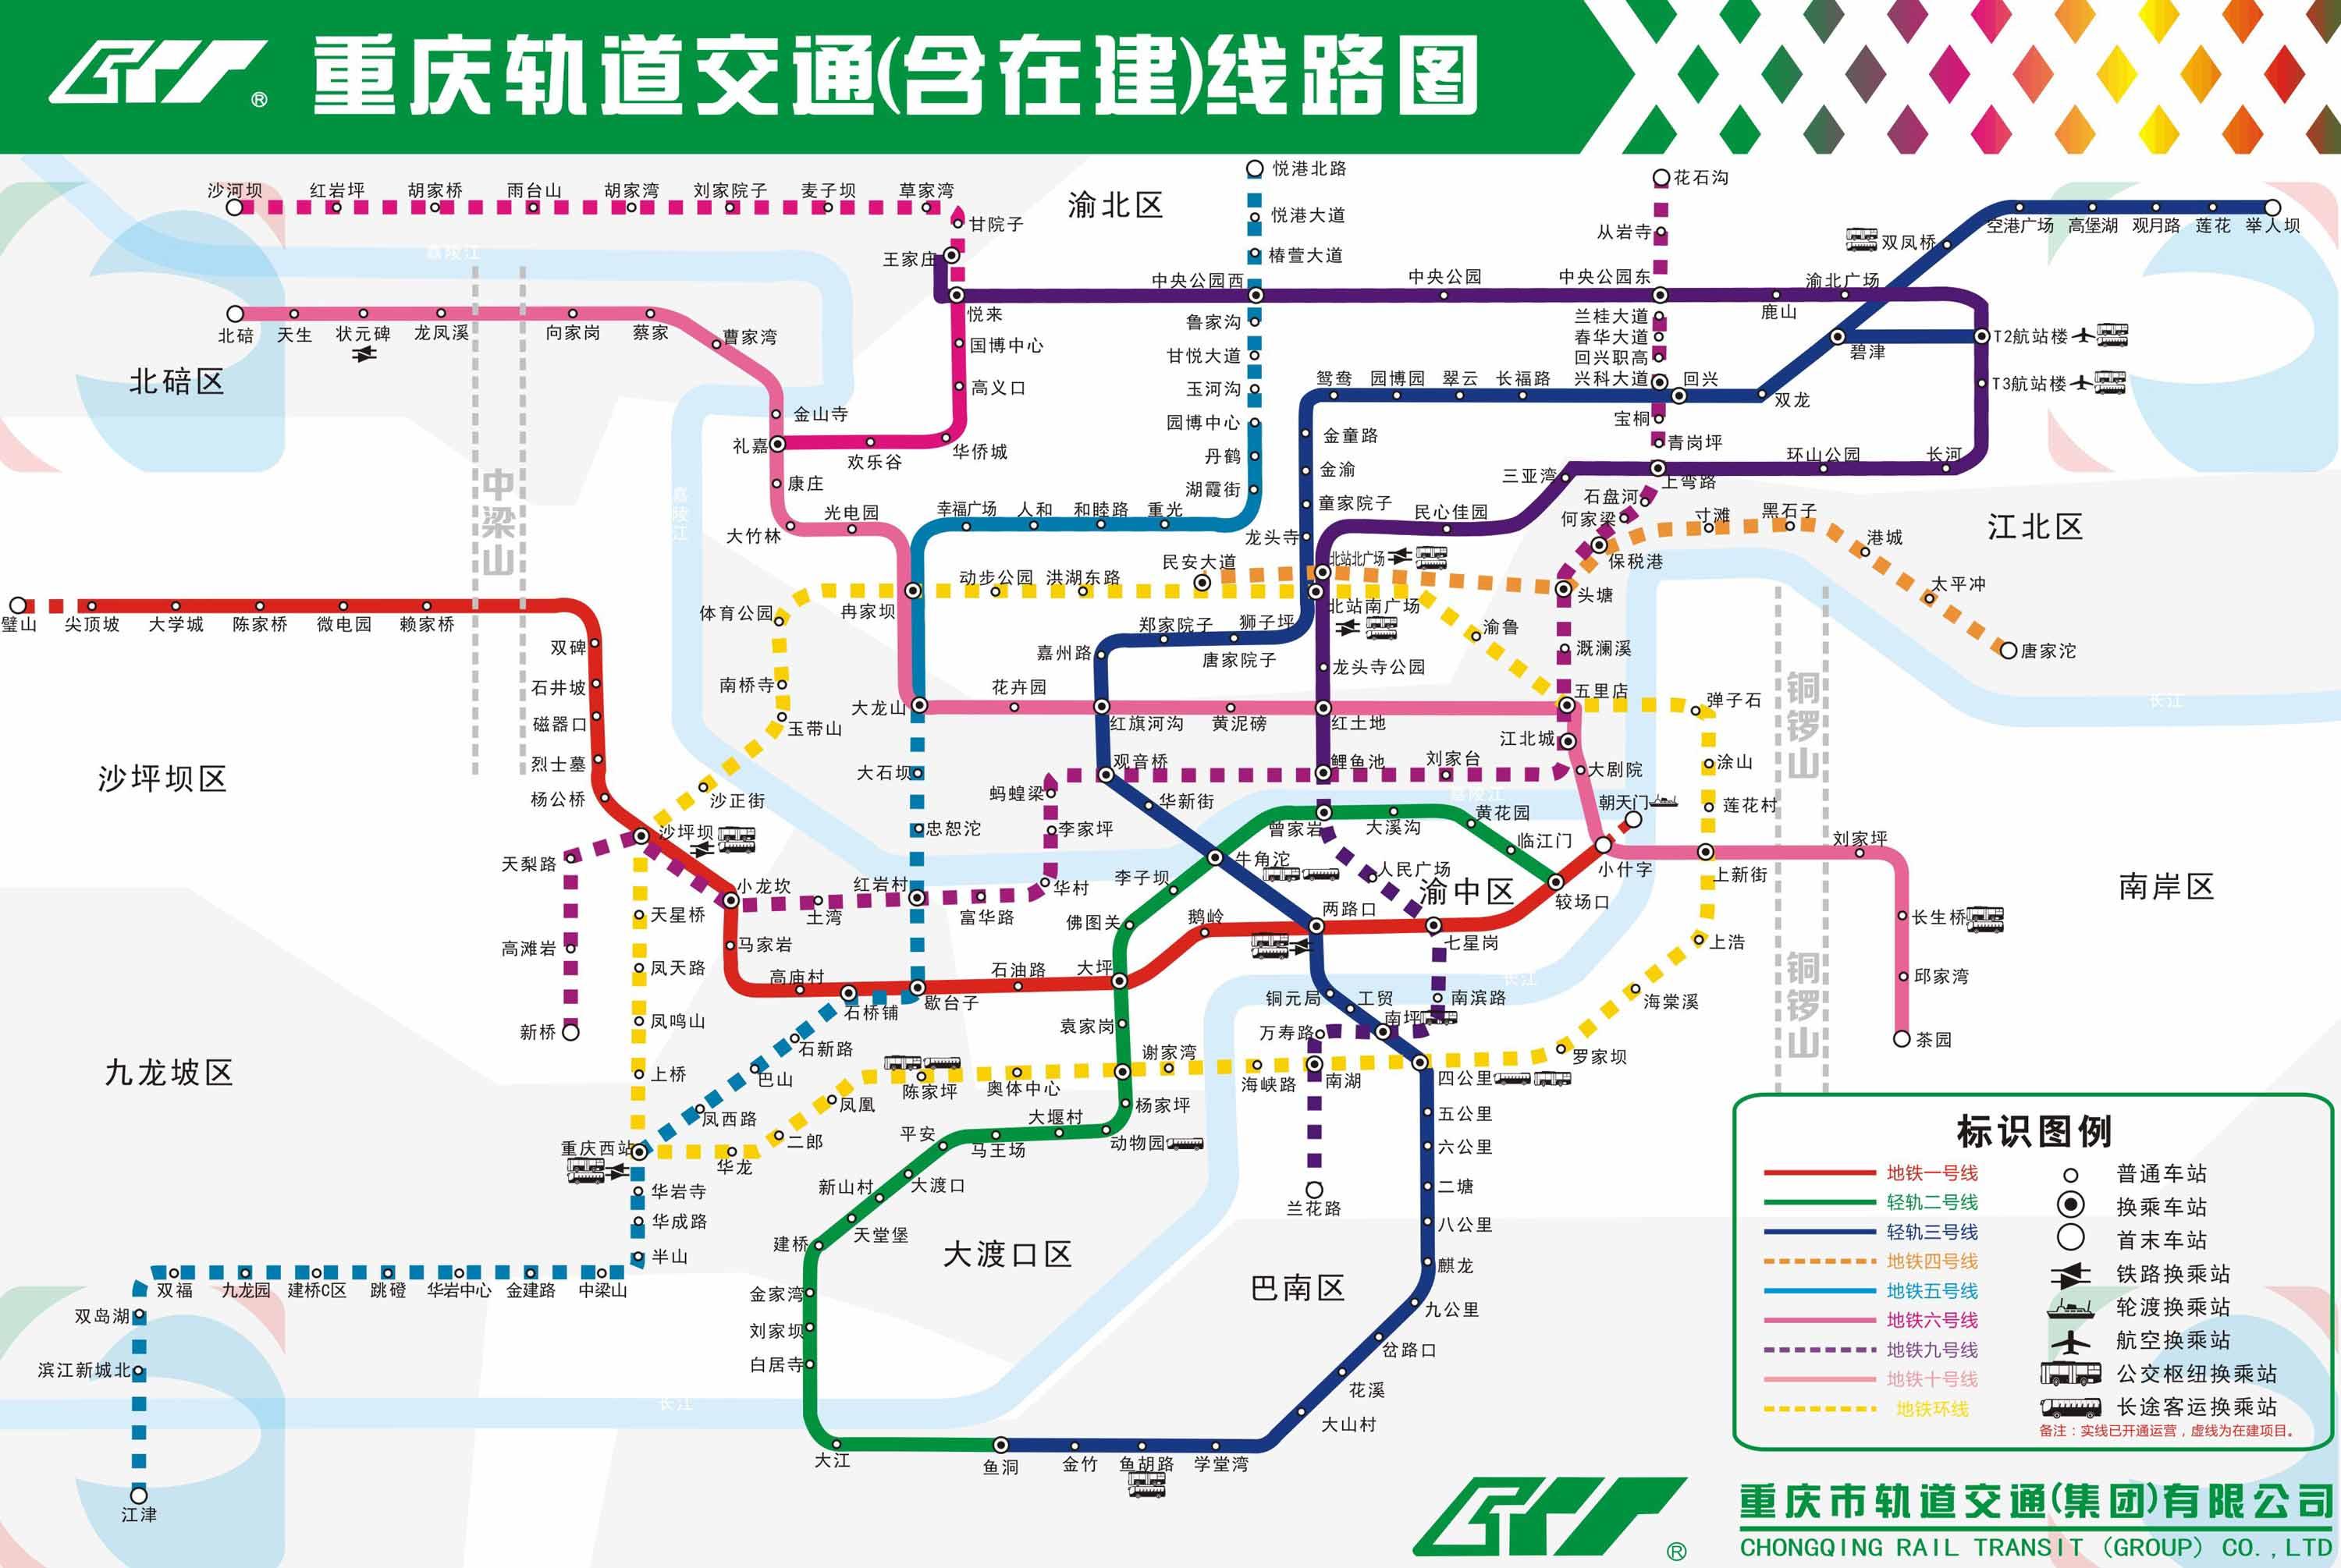 2019最新重庆轻轨地铁线路图及时刻表(开班收班)时间介绍